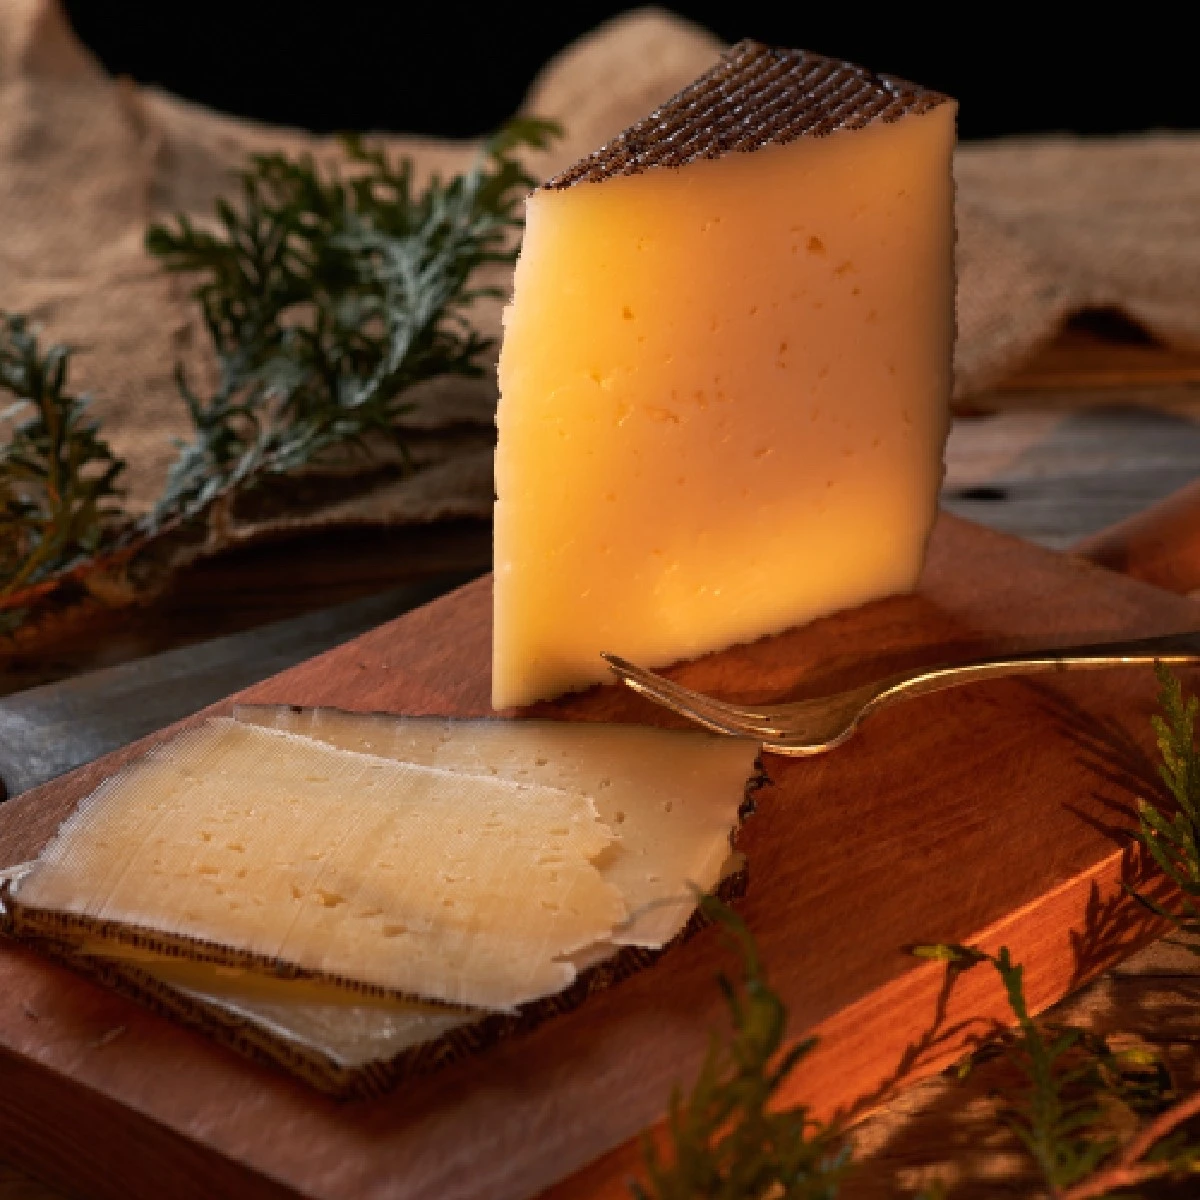 Tarih Boyunca Para Yerine Kullanılan 10 Nesne Parmesan Peyniri